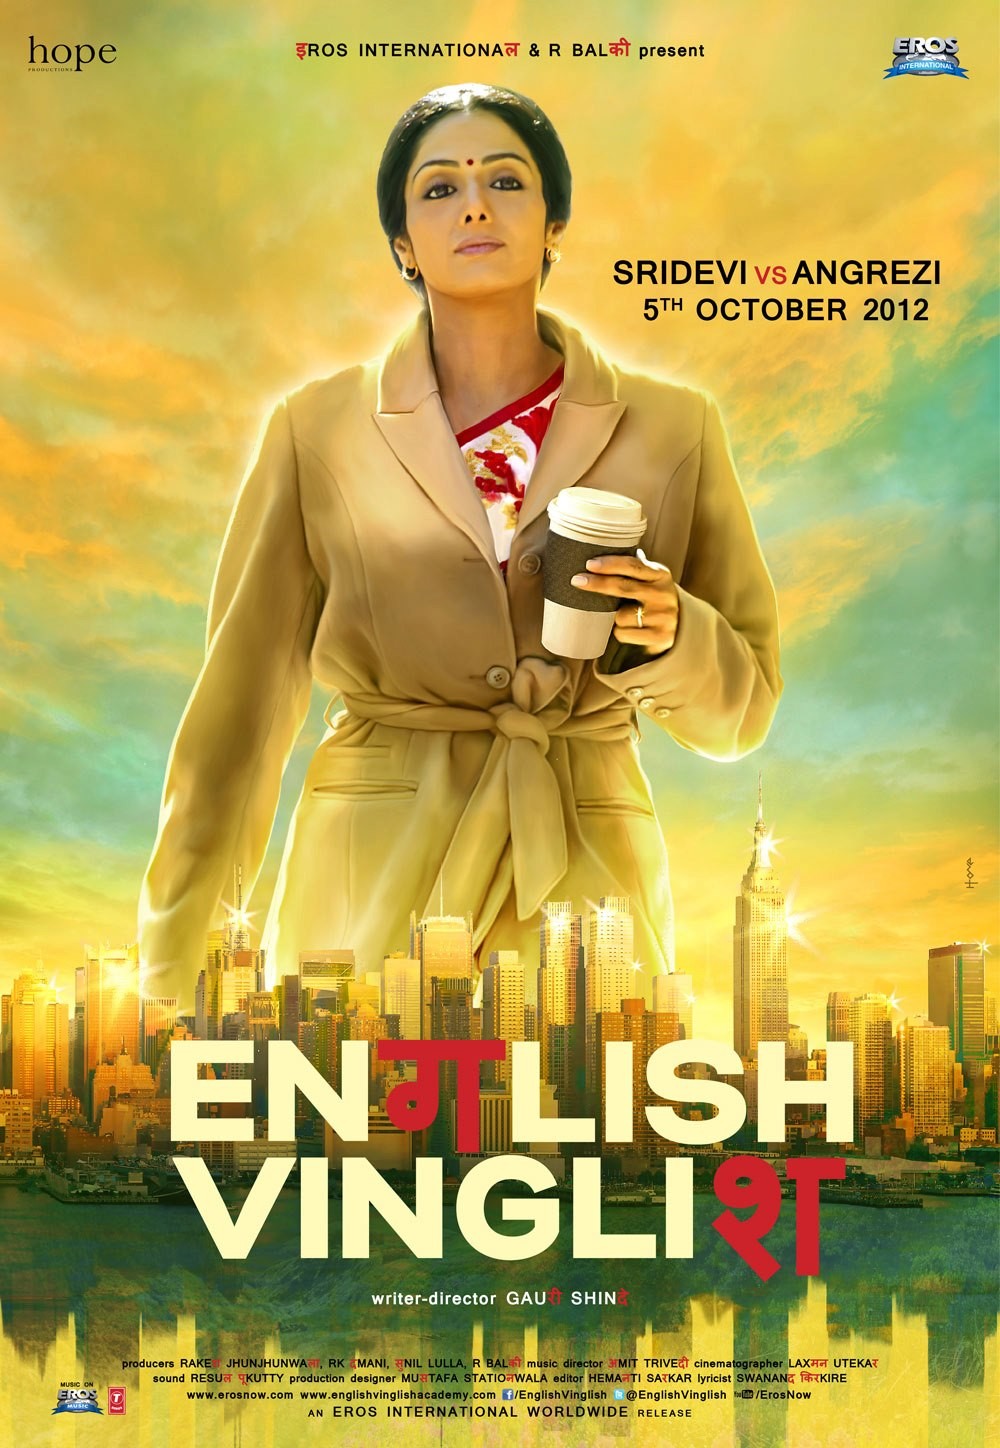 English Vinglish 1 Of 4 Extra Large Movie Poster Image Imp Awards